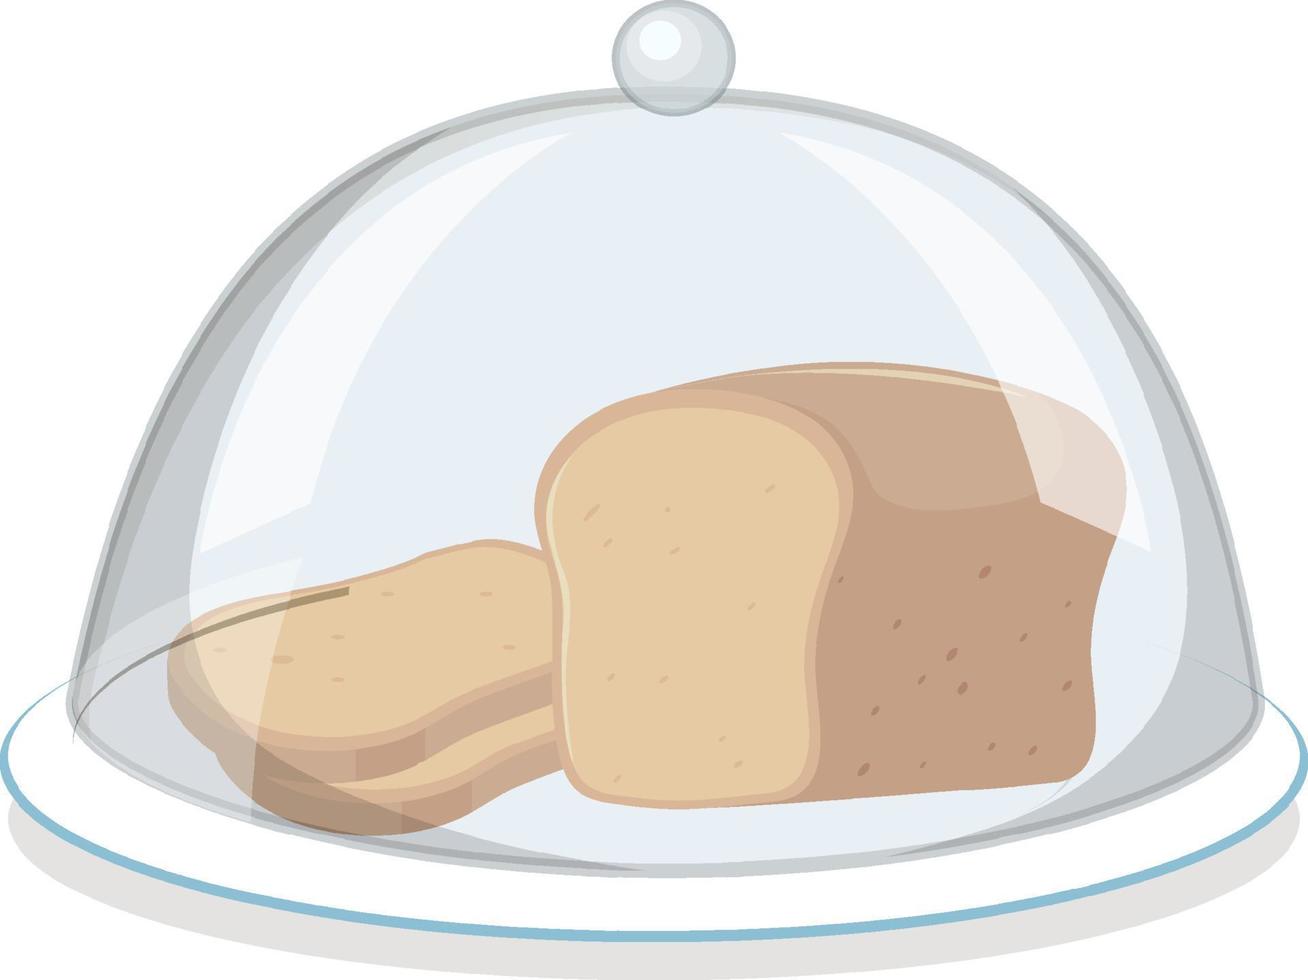 bröd på rund tallrik med glasskåpa på vit bakgrund vektor